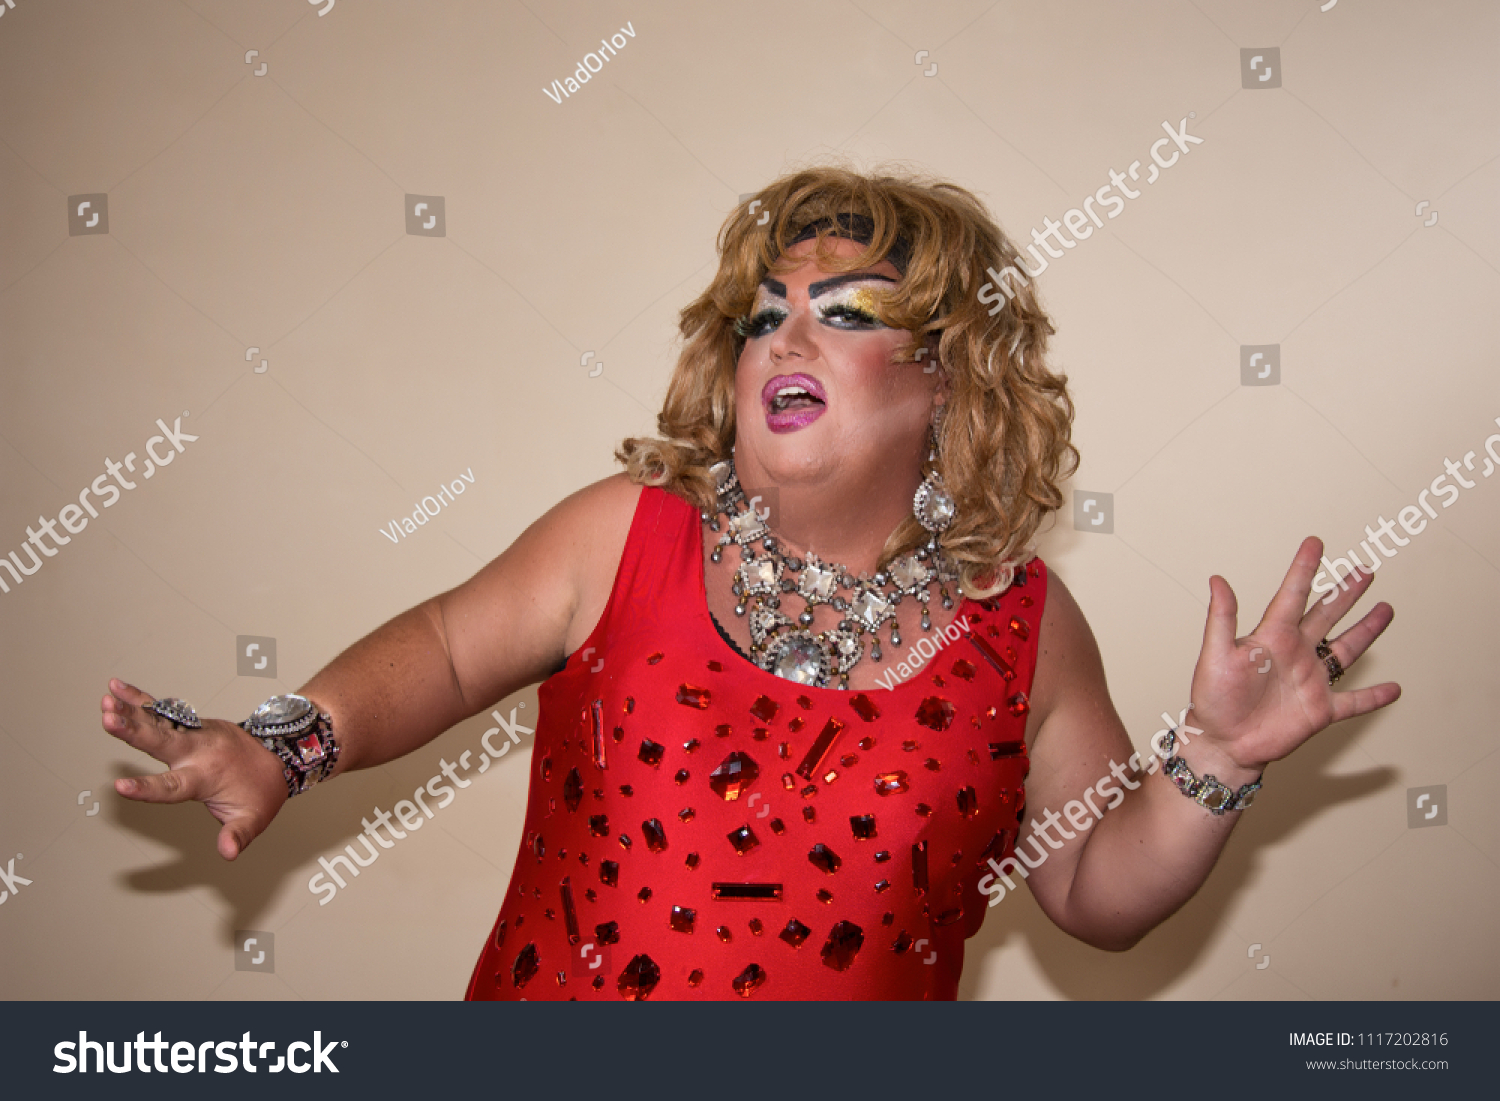 Funny Drag Queen Crossdresser Actor Stock Photo Edit Now 1117202816